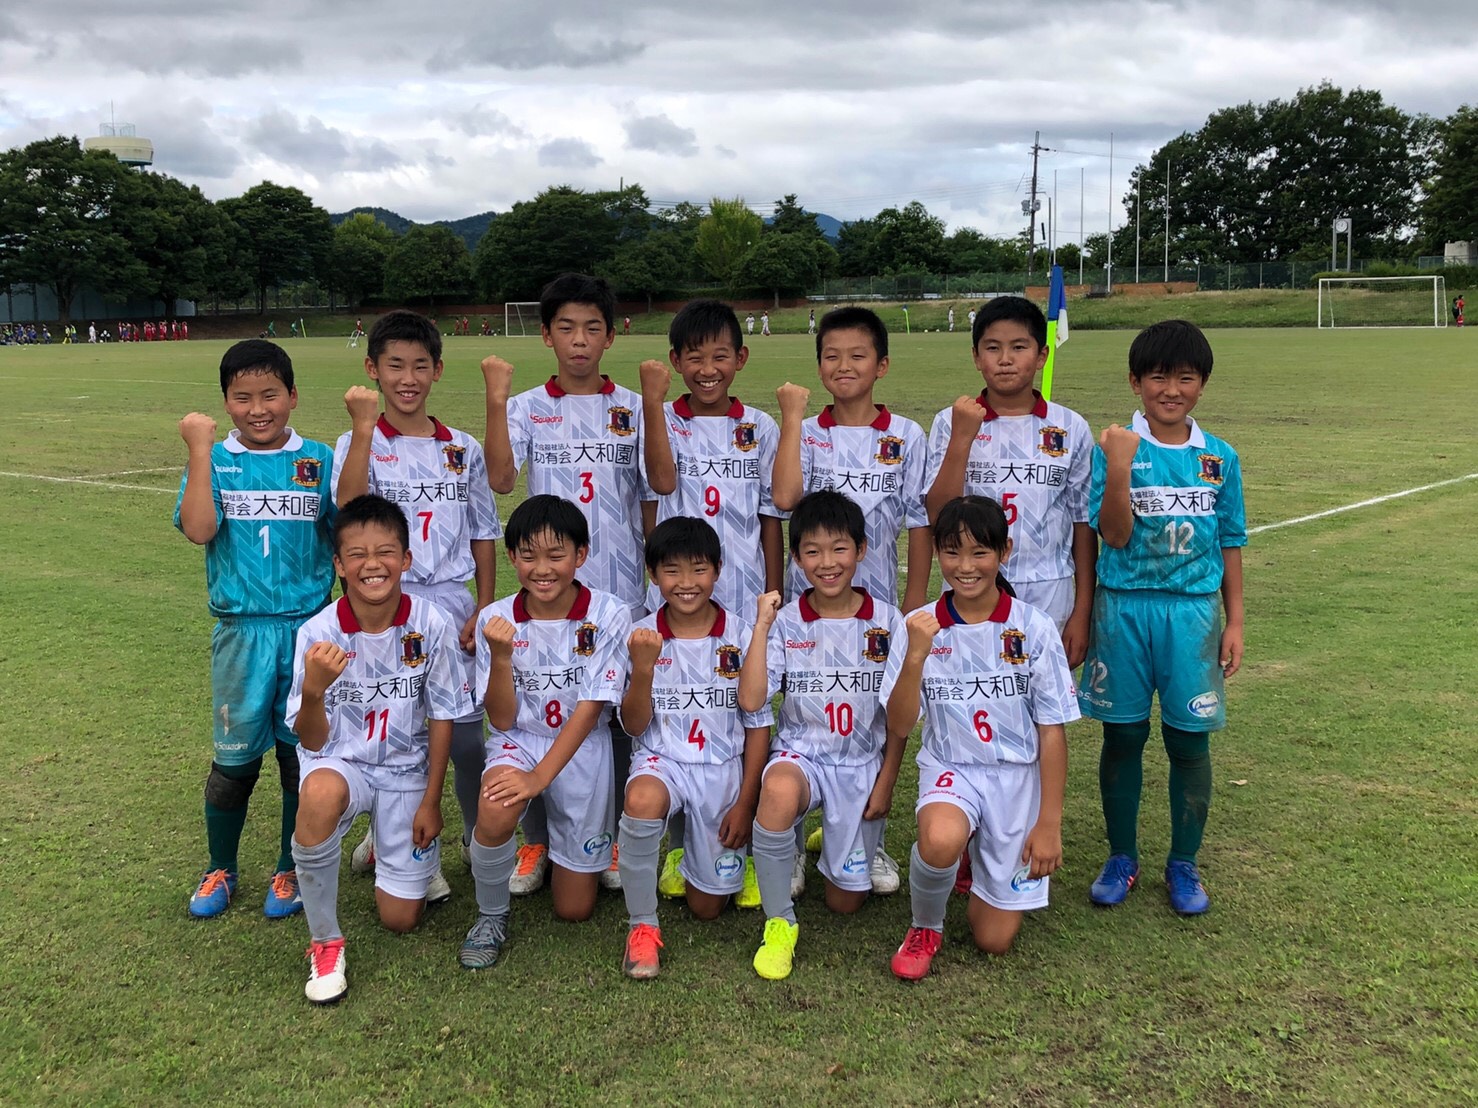 ジュニア Kinshoカップ第41回奈良県小学生サッカー大会の結果 奈良クラブ Nara Club Official Site